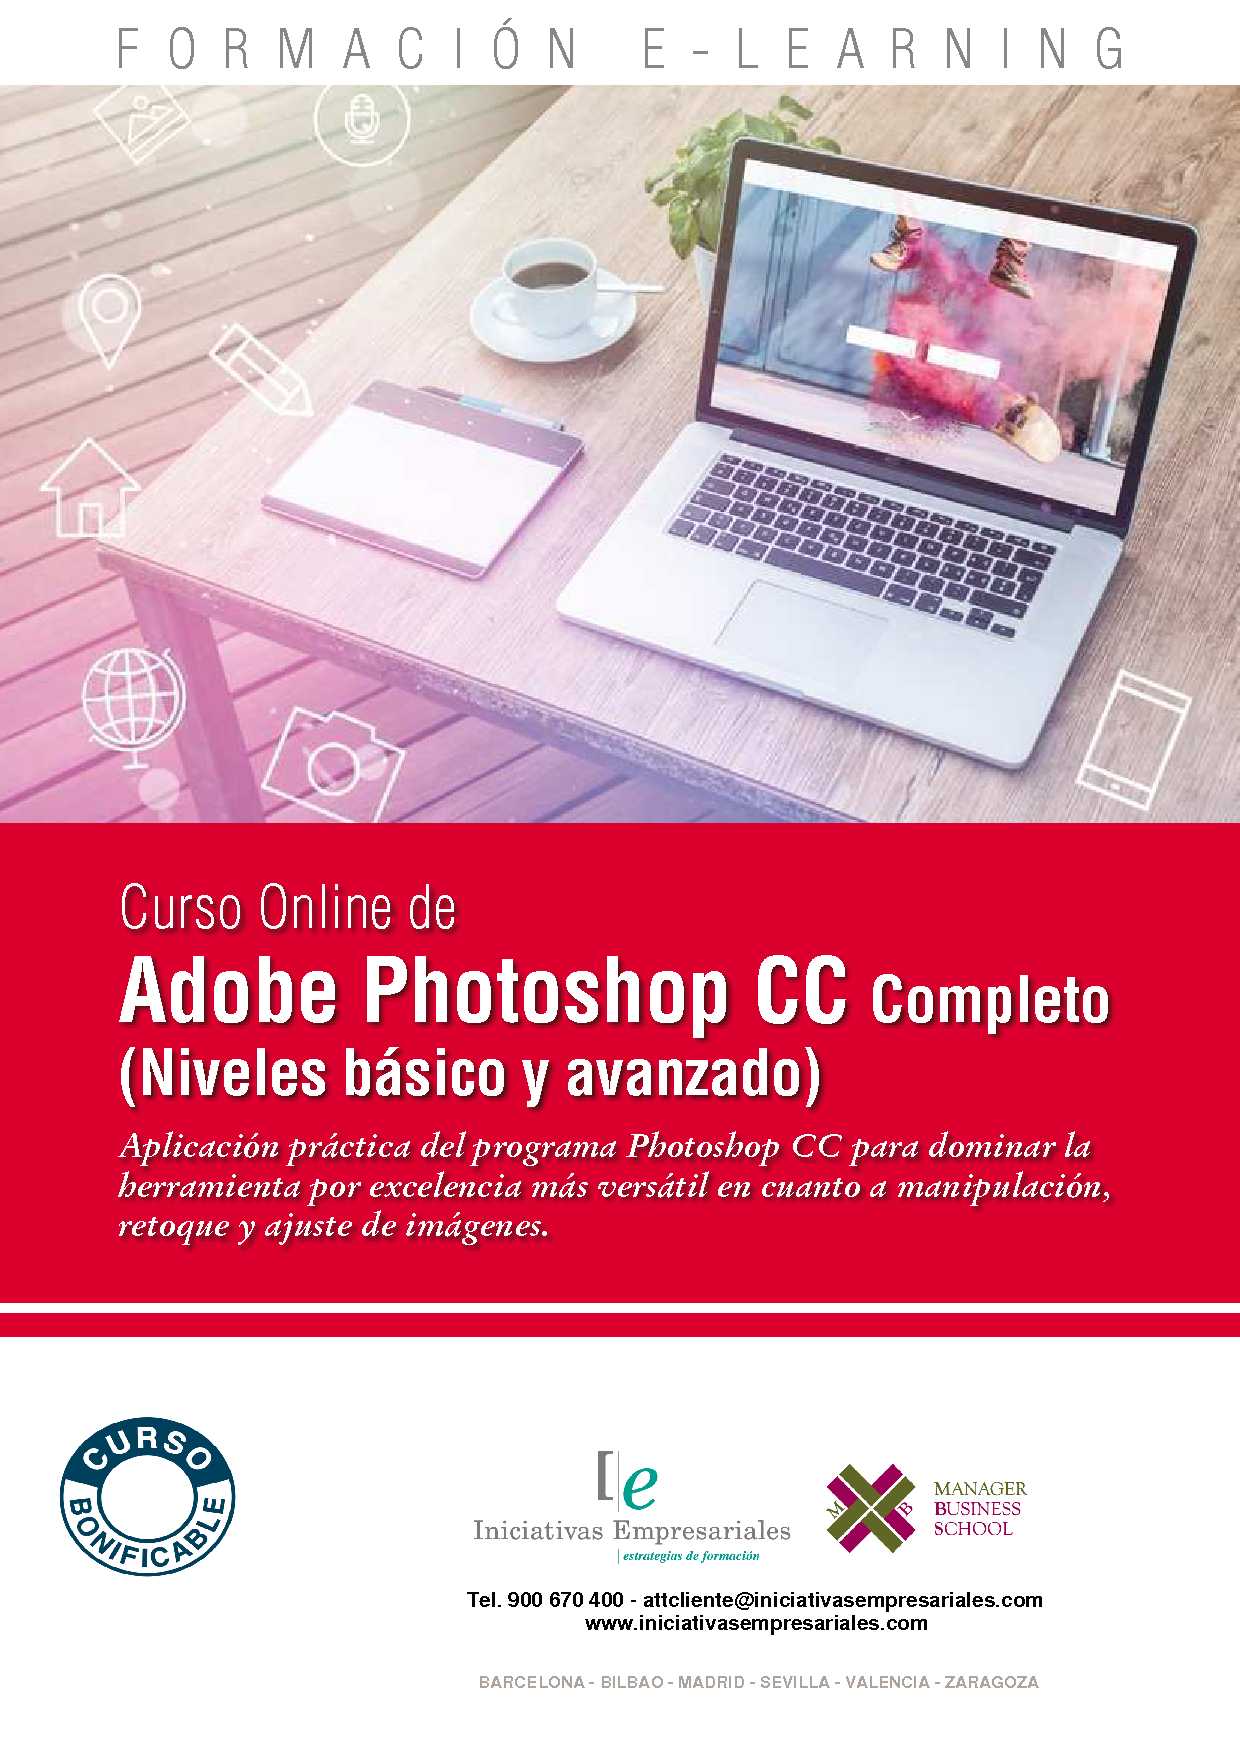 Adobe Photoshop CC Completo (Niveles básico y avanzado)